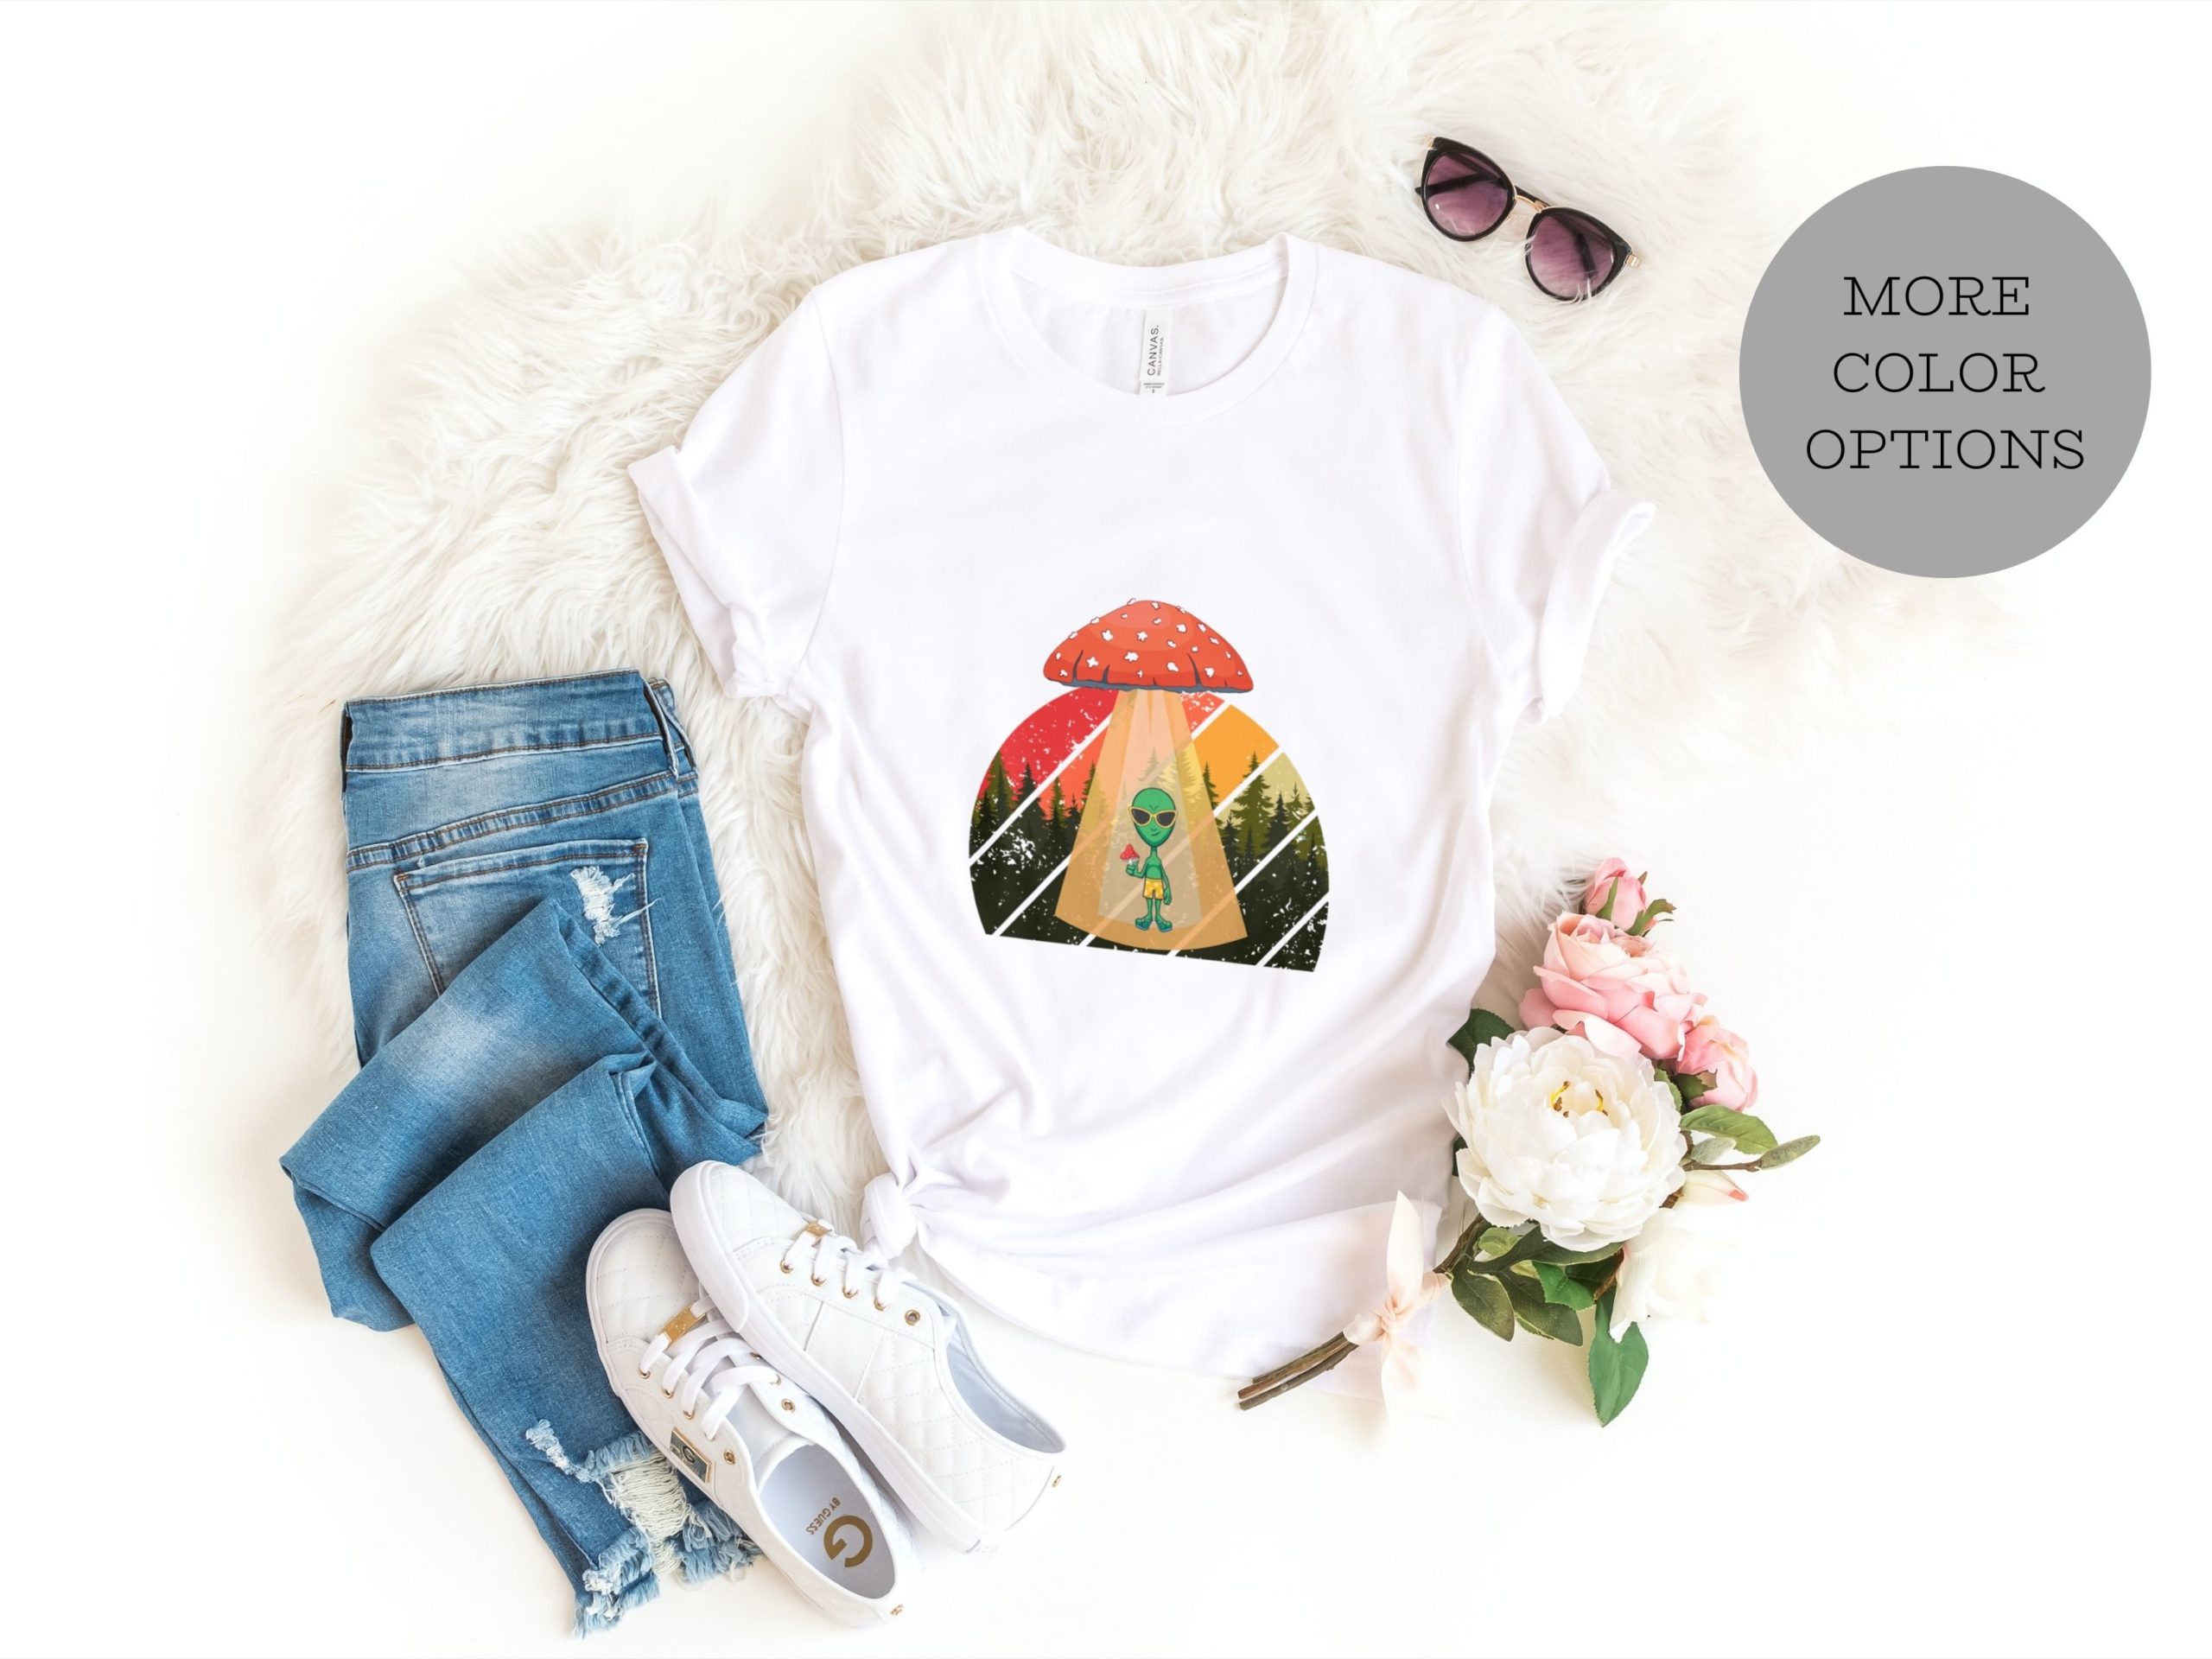 Alien and mushroom graphic shirt